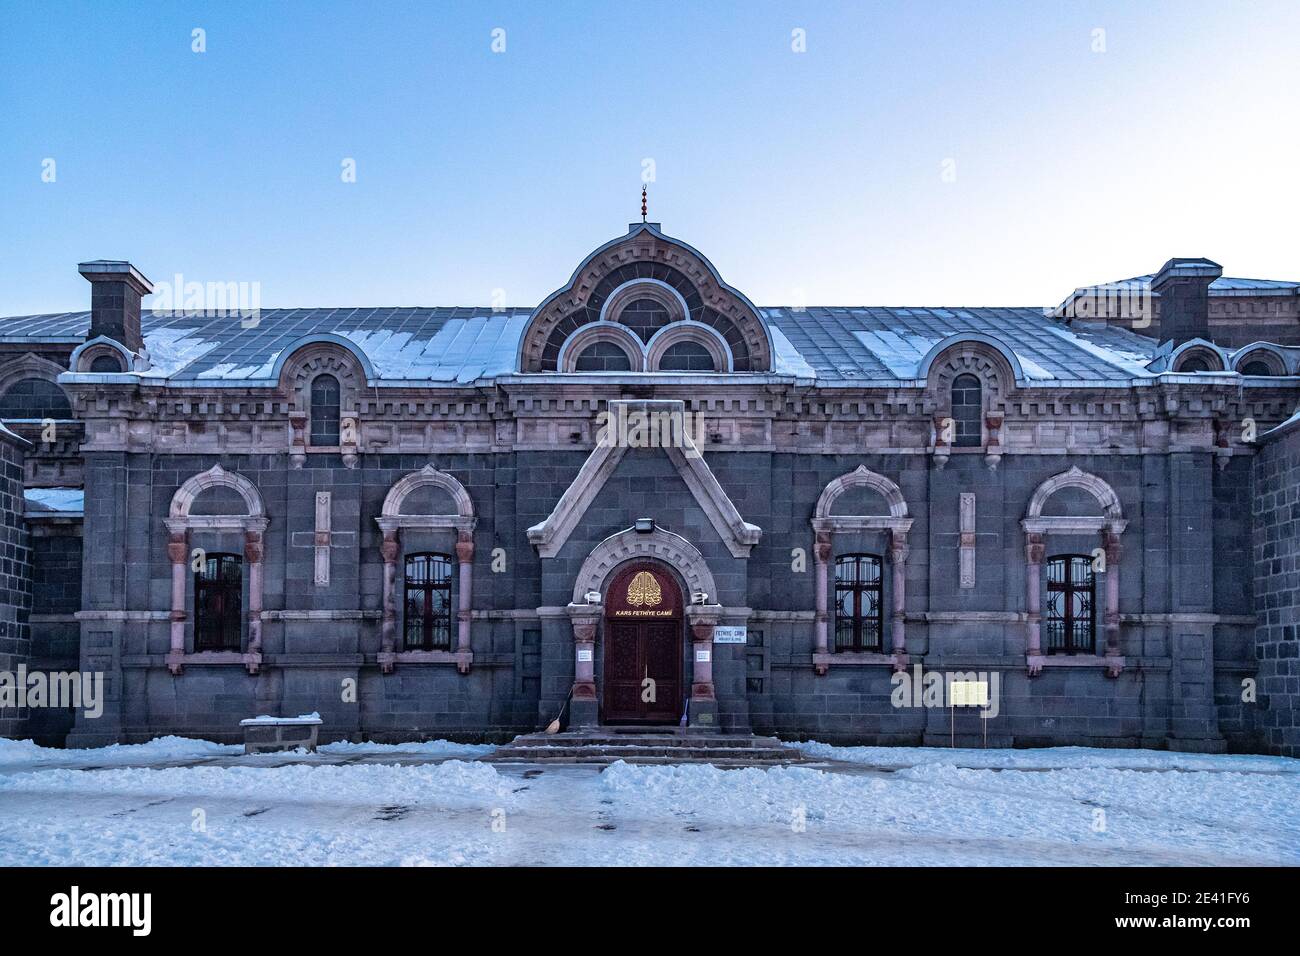 La Moschea di Fethiye (Camii) che si è trasformata da una Chiesa russa, Kars, Turchia. Edificio in stile Baltico russo. Foto Stock